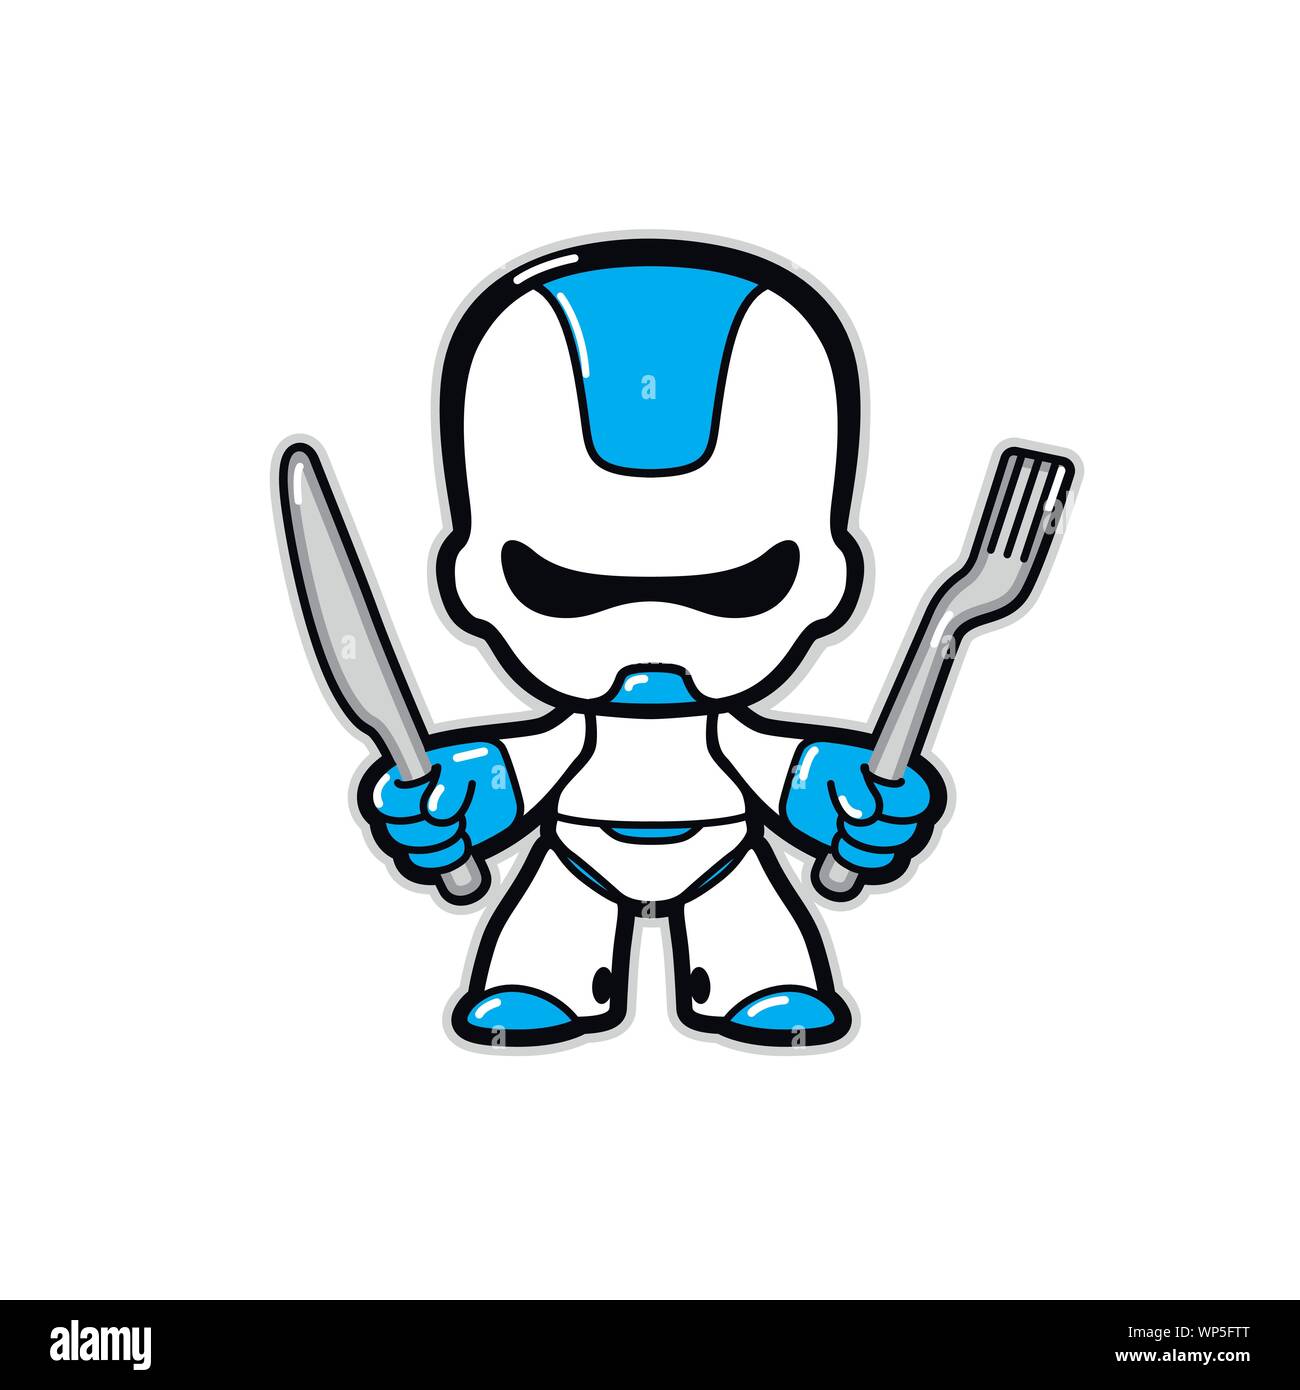 Ilustración de un robot. Vector. Carácter del robot del futuro con un cuchillo y tenedor. La mascota de un cyber café o restaurante. Héroe para espacio de comida rápida. Ilustración del Vector